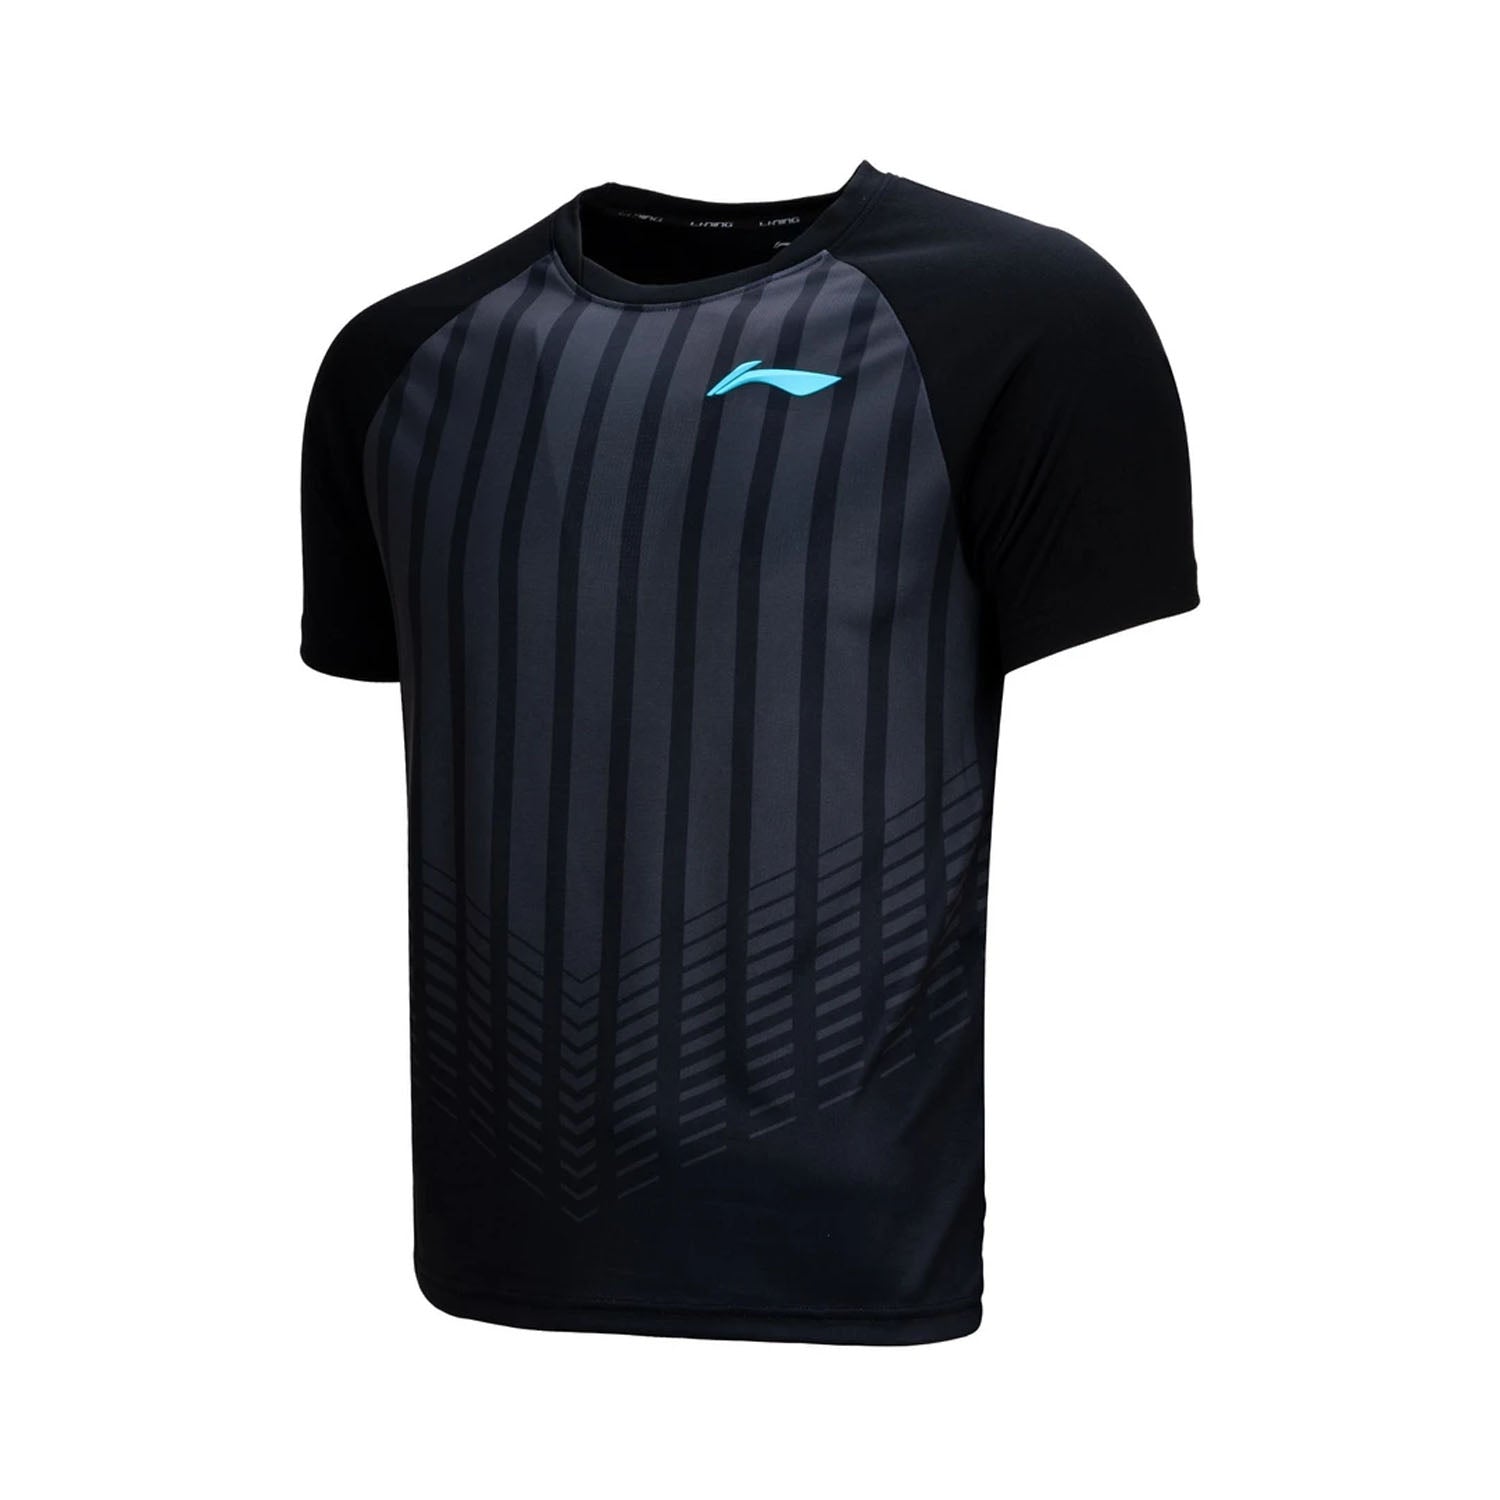 New Li-Ning Men's sports Tops tennis/badminton Clothes T Shirts